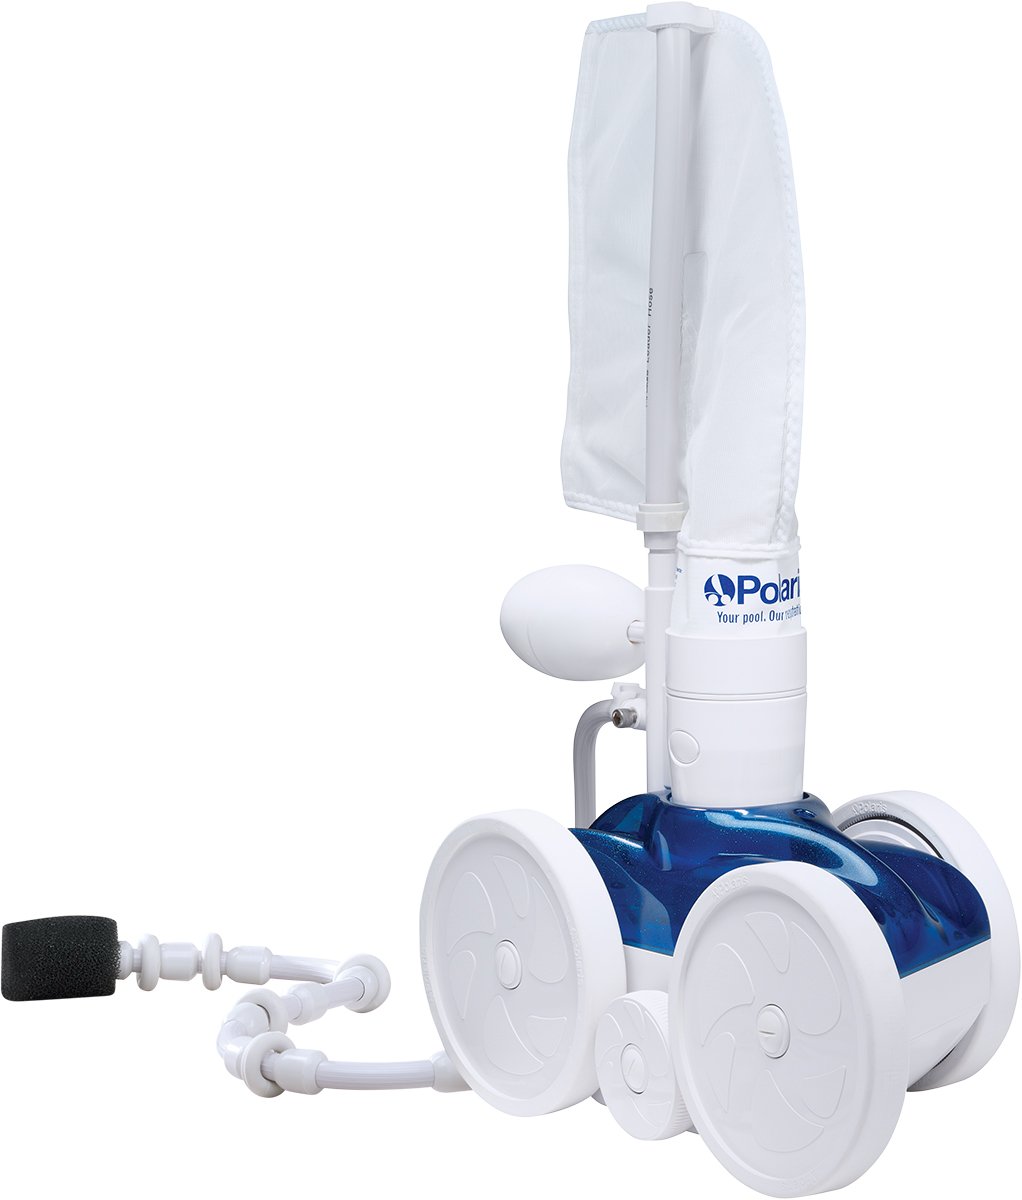 Polaris Vac-Sweep 280 Pressure Side Cleaner - Best Pool Vacuum